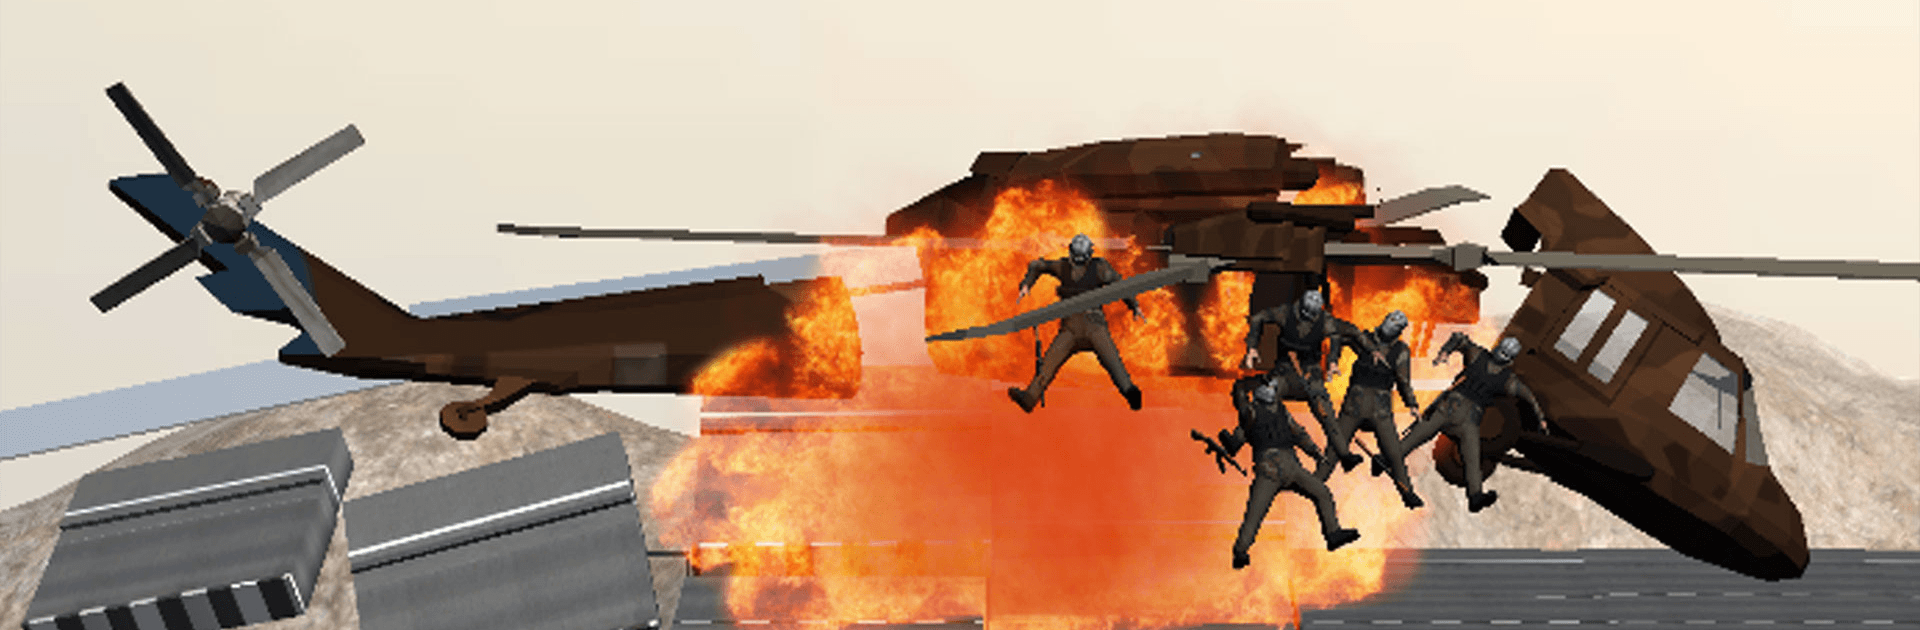 Sniper Attack: Jeux de guerre